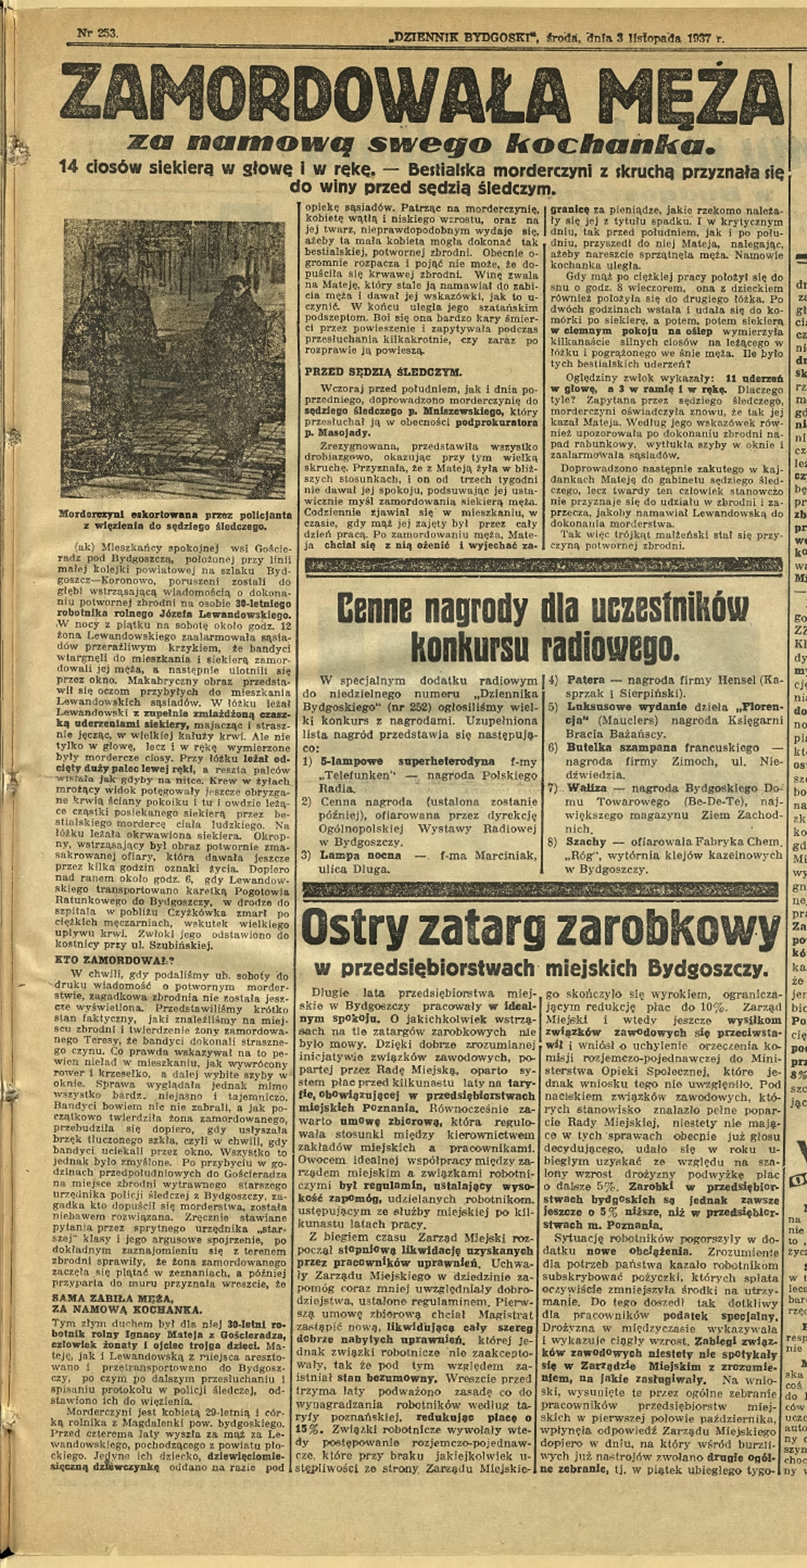 Dziennik Bydgoski, 3 listopada 1937, źródło: Kujawsko-Pomorska Biblioteka Cyfrowa